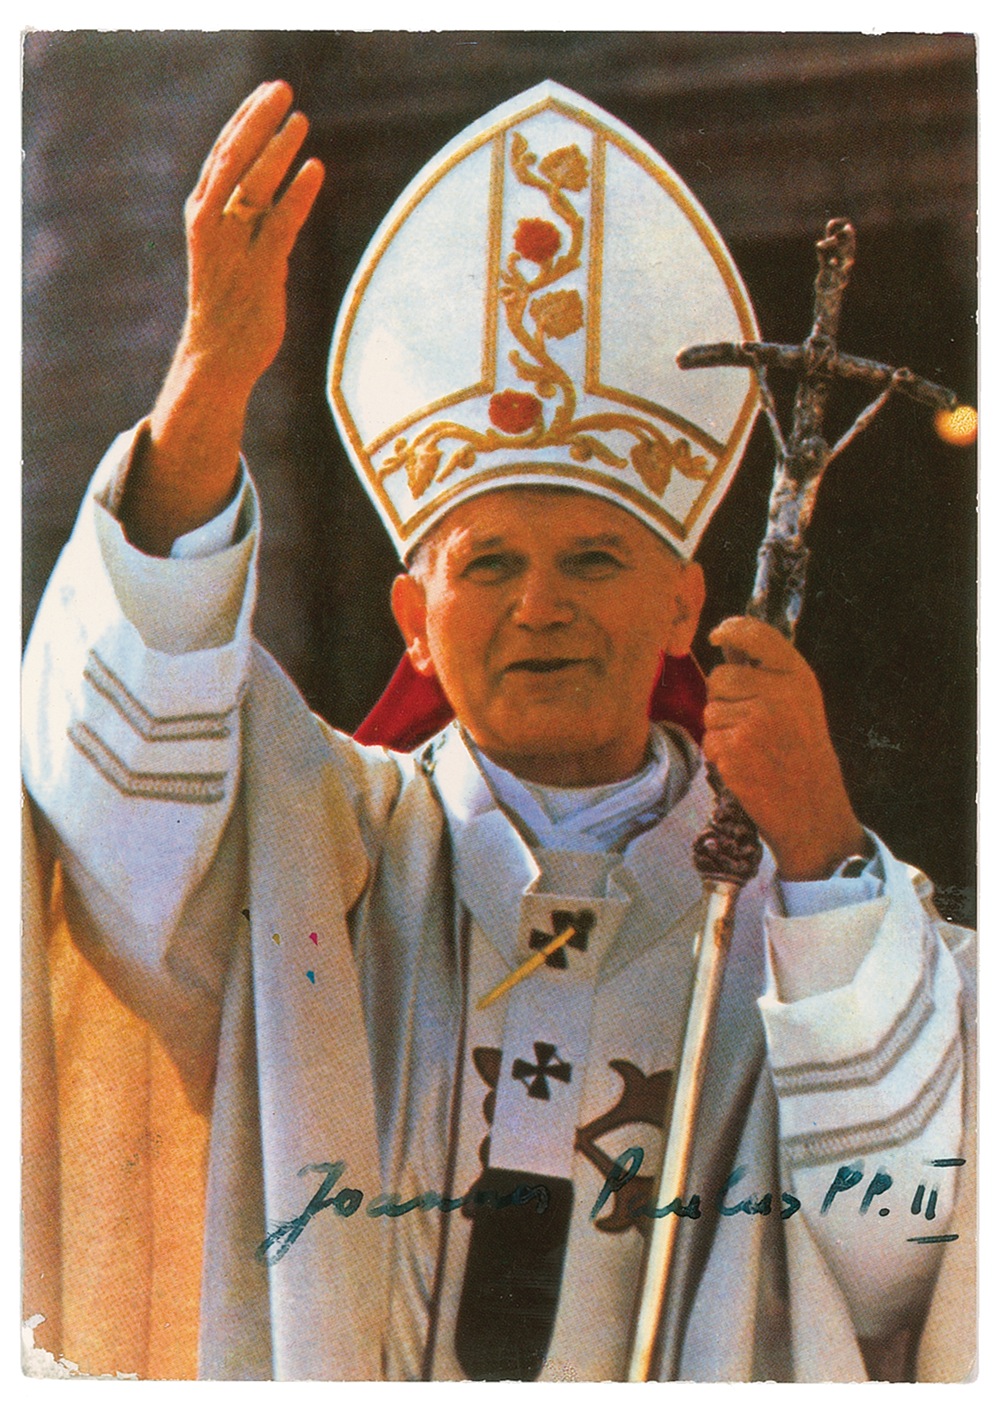 Lot #222 John Paul II